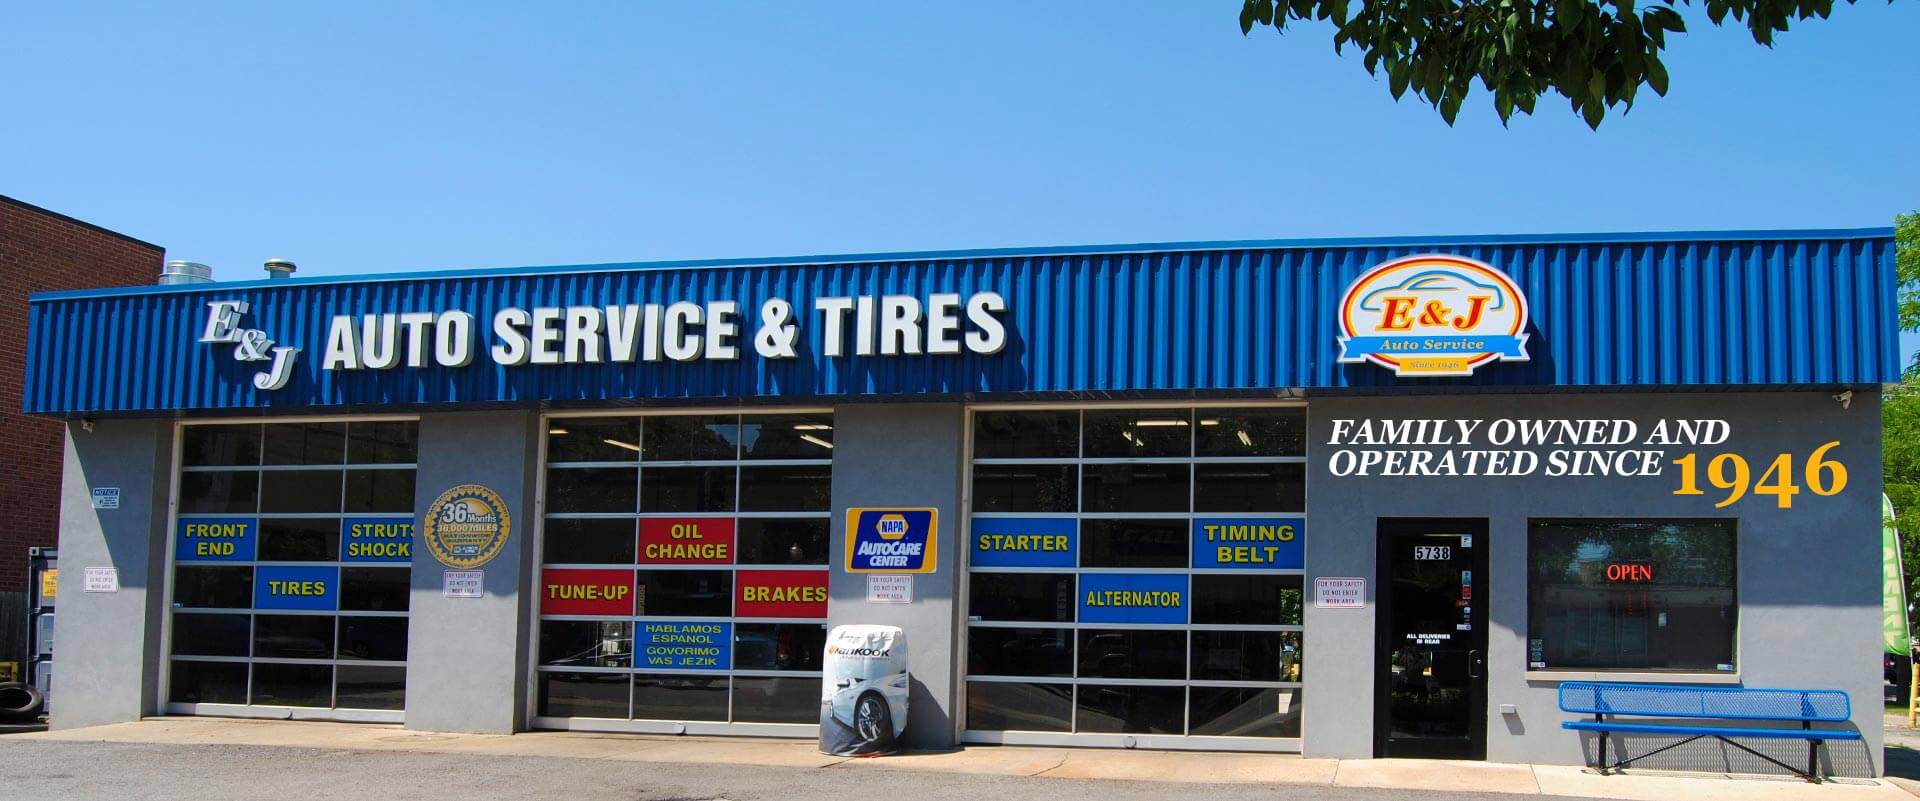 F & M Automotive Car Repair Service Kansas